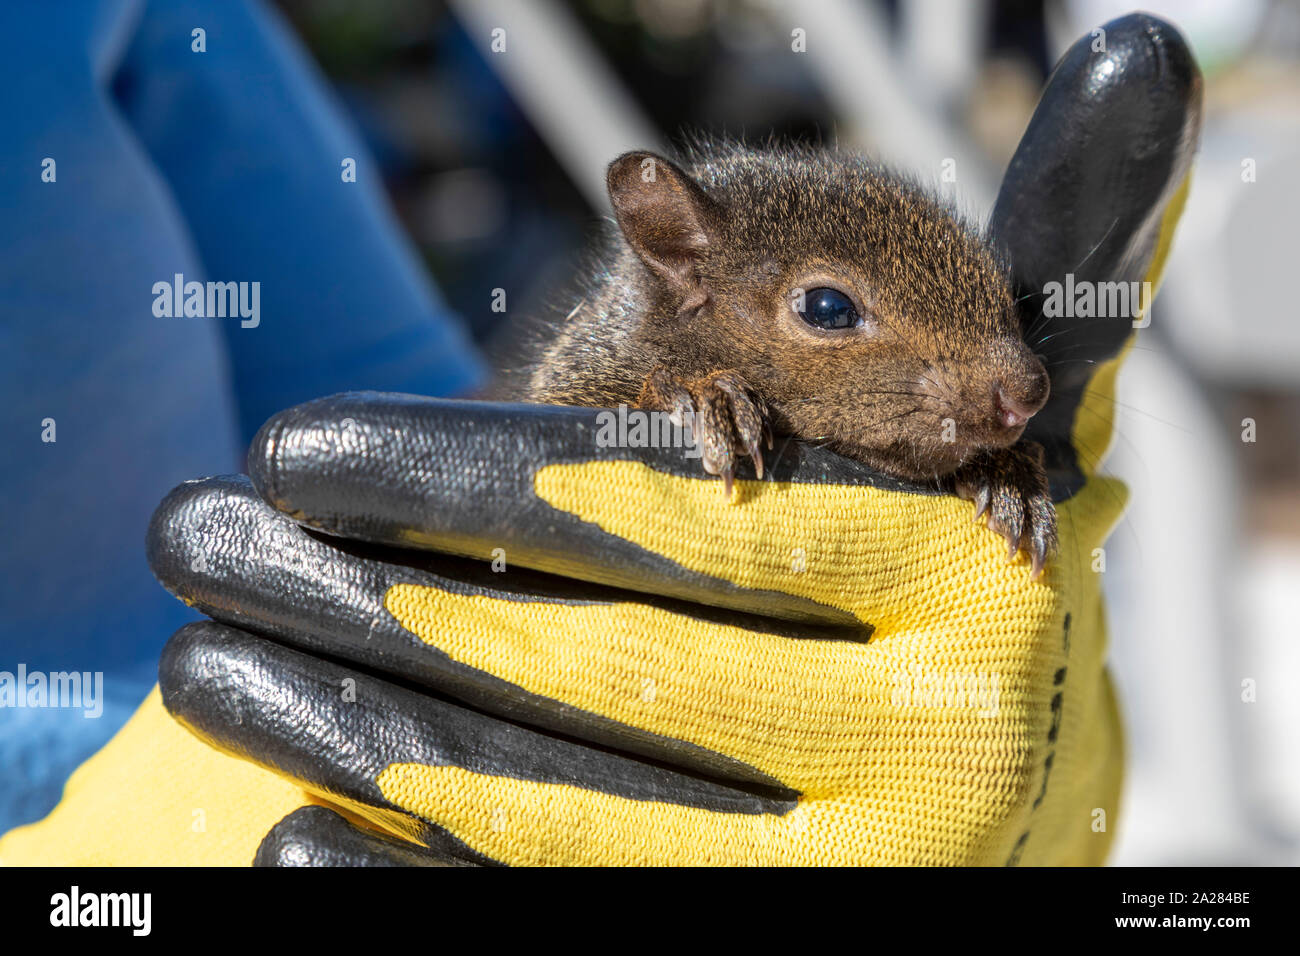 Detroit, Michigan - hält eine Frau ein Baby Eichhörnchen, dass sie fürchtete, die von freiwilligen Installation von Trainingsgeräten in einem Community Park mit Füßen getreten würden. Stockfoto